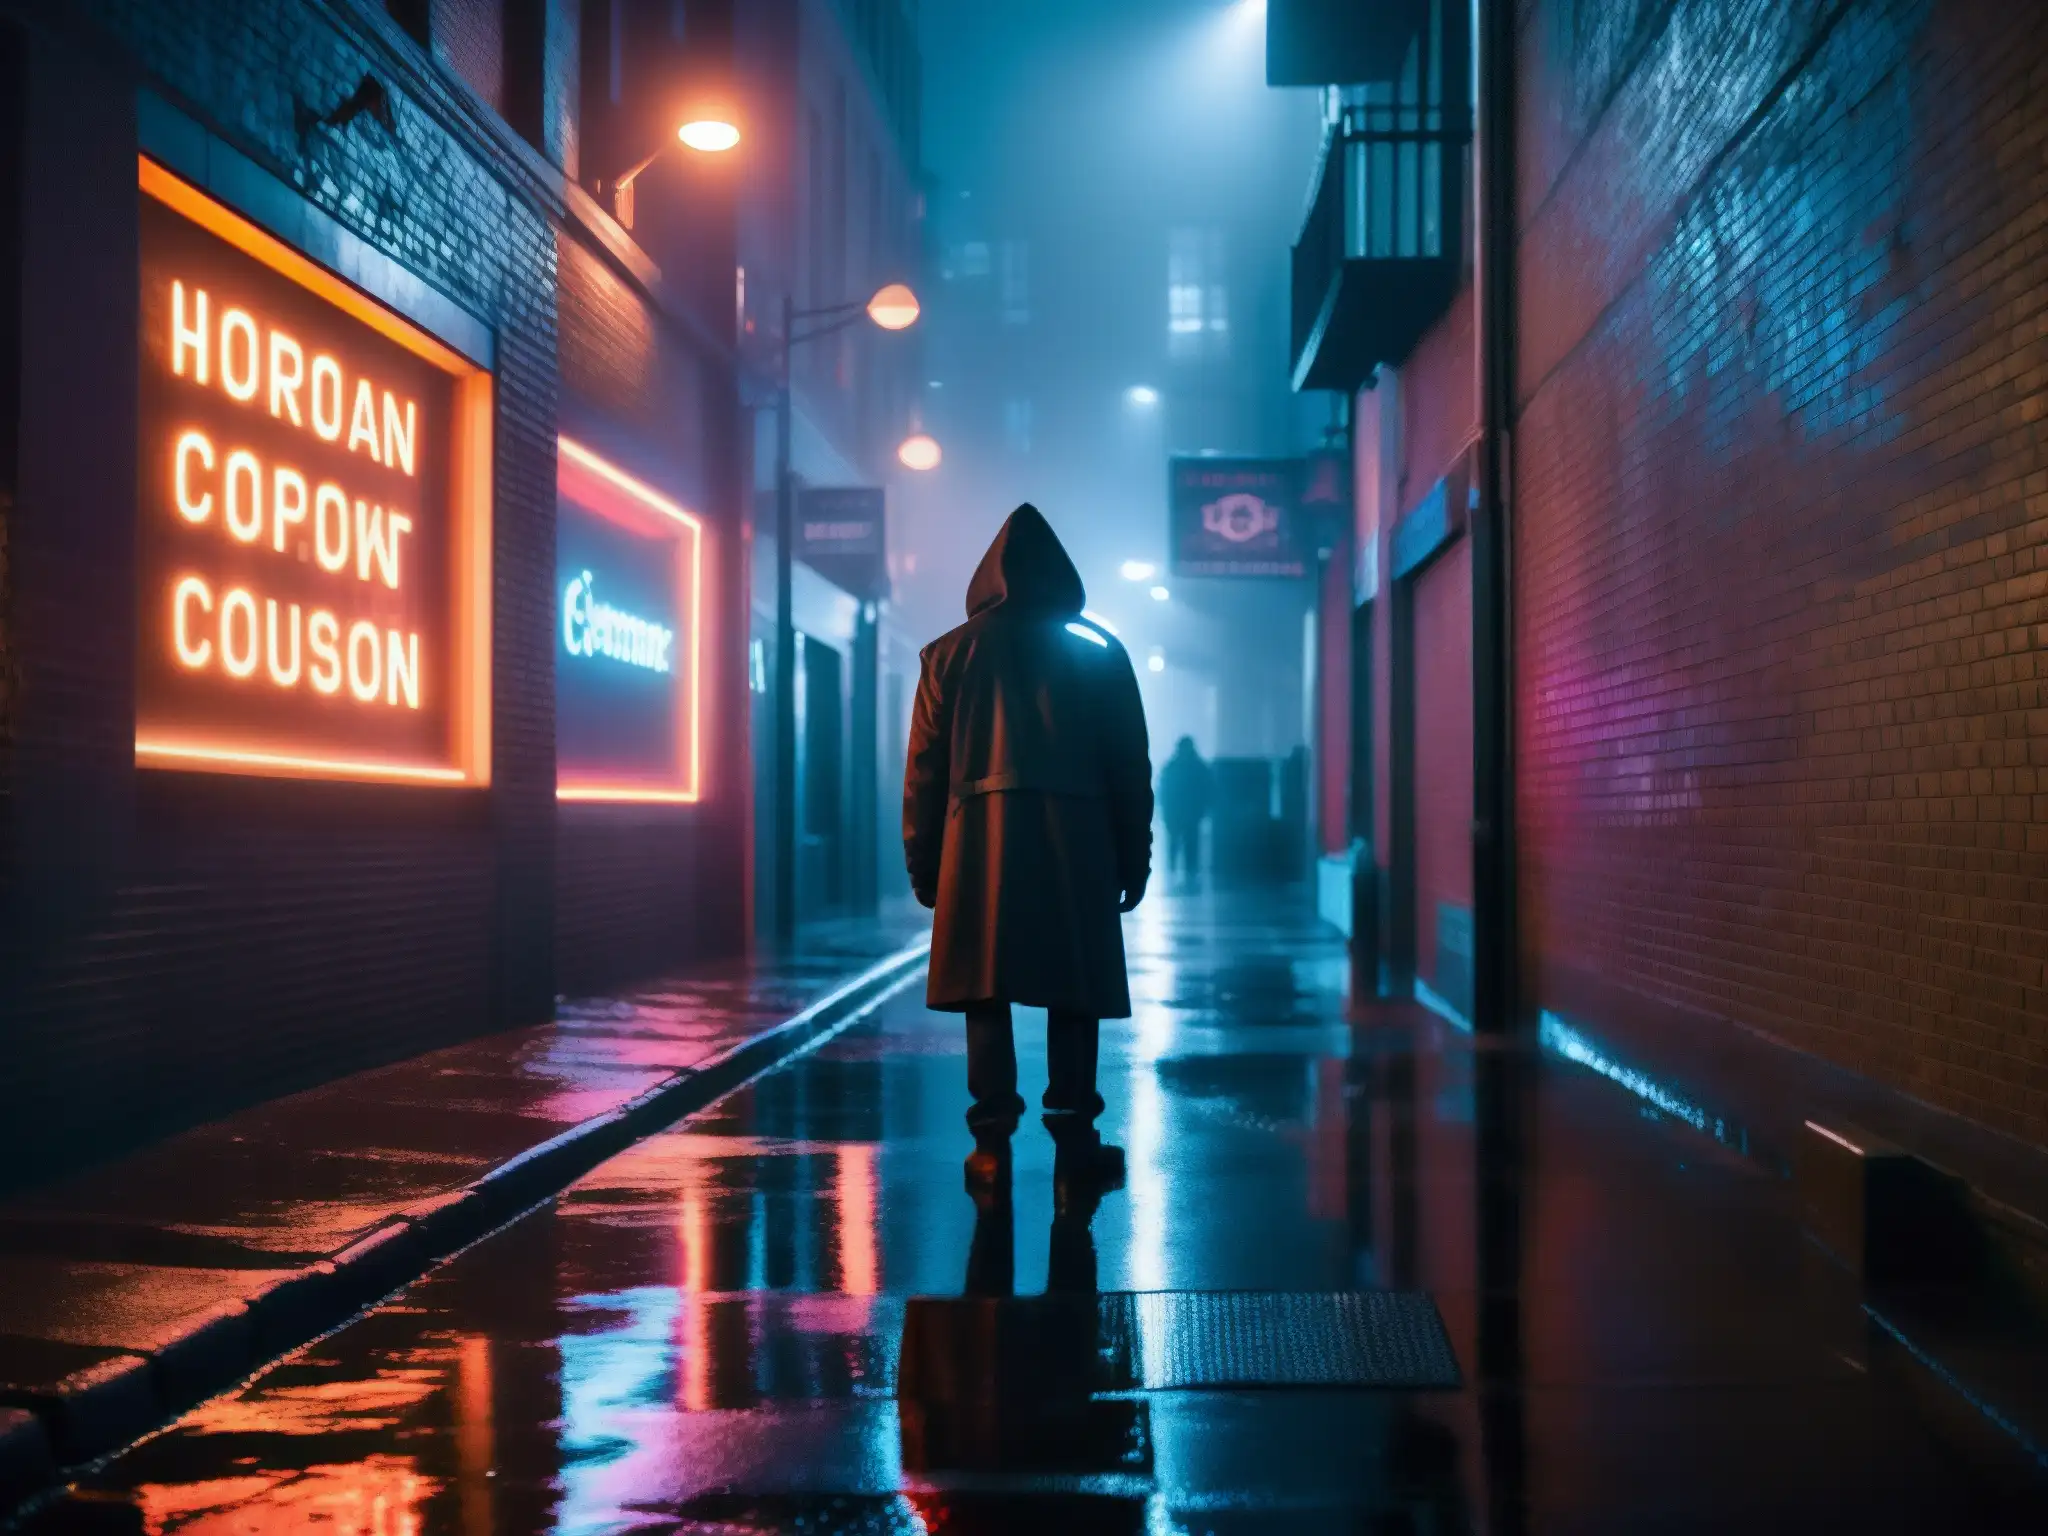 Figura misteriosa camina por la ciudad en la noche, entre luces de neón y sombras largas, evocando leyendas urbanas y la era de la tecnología